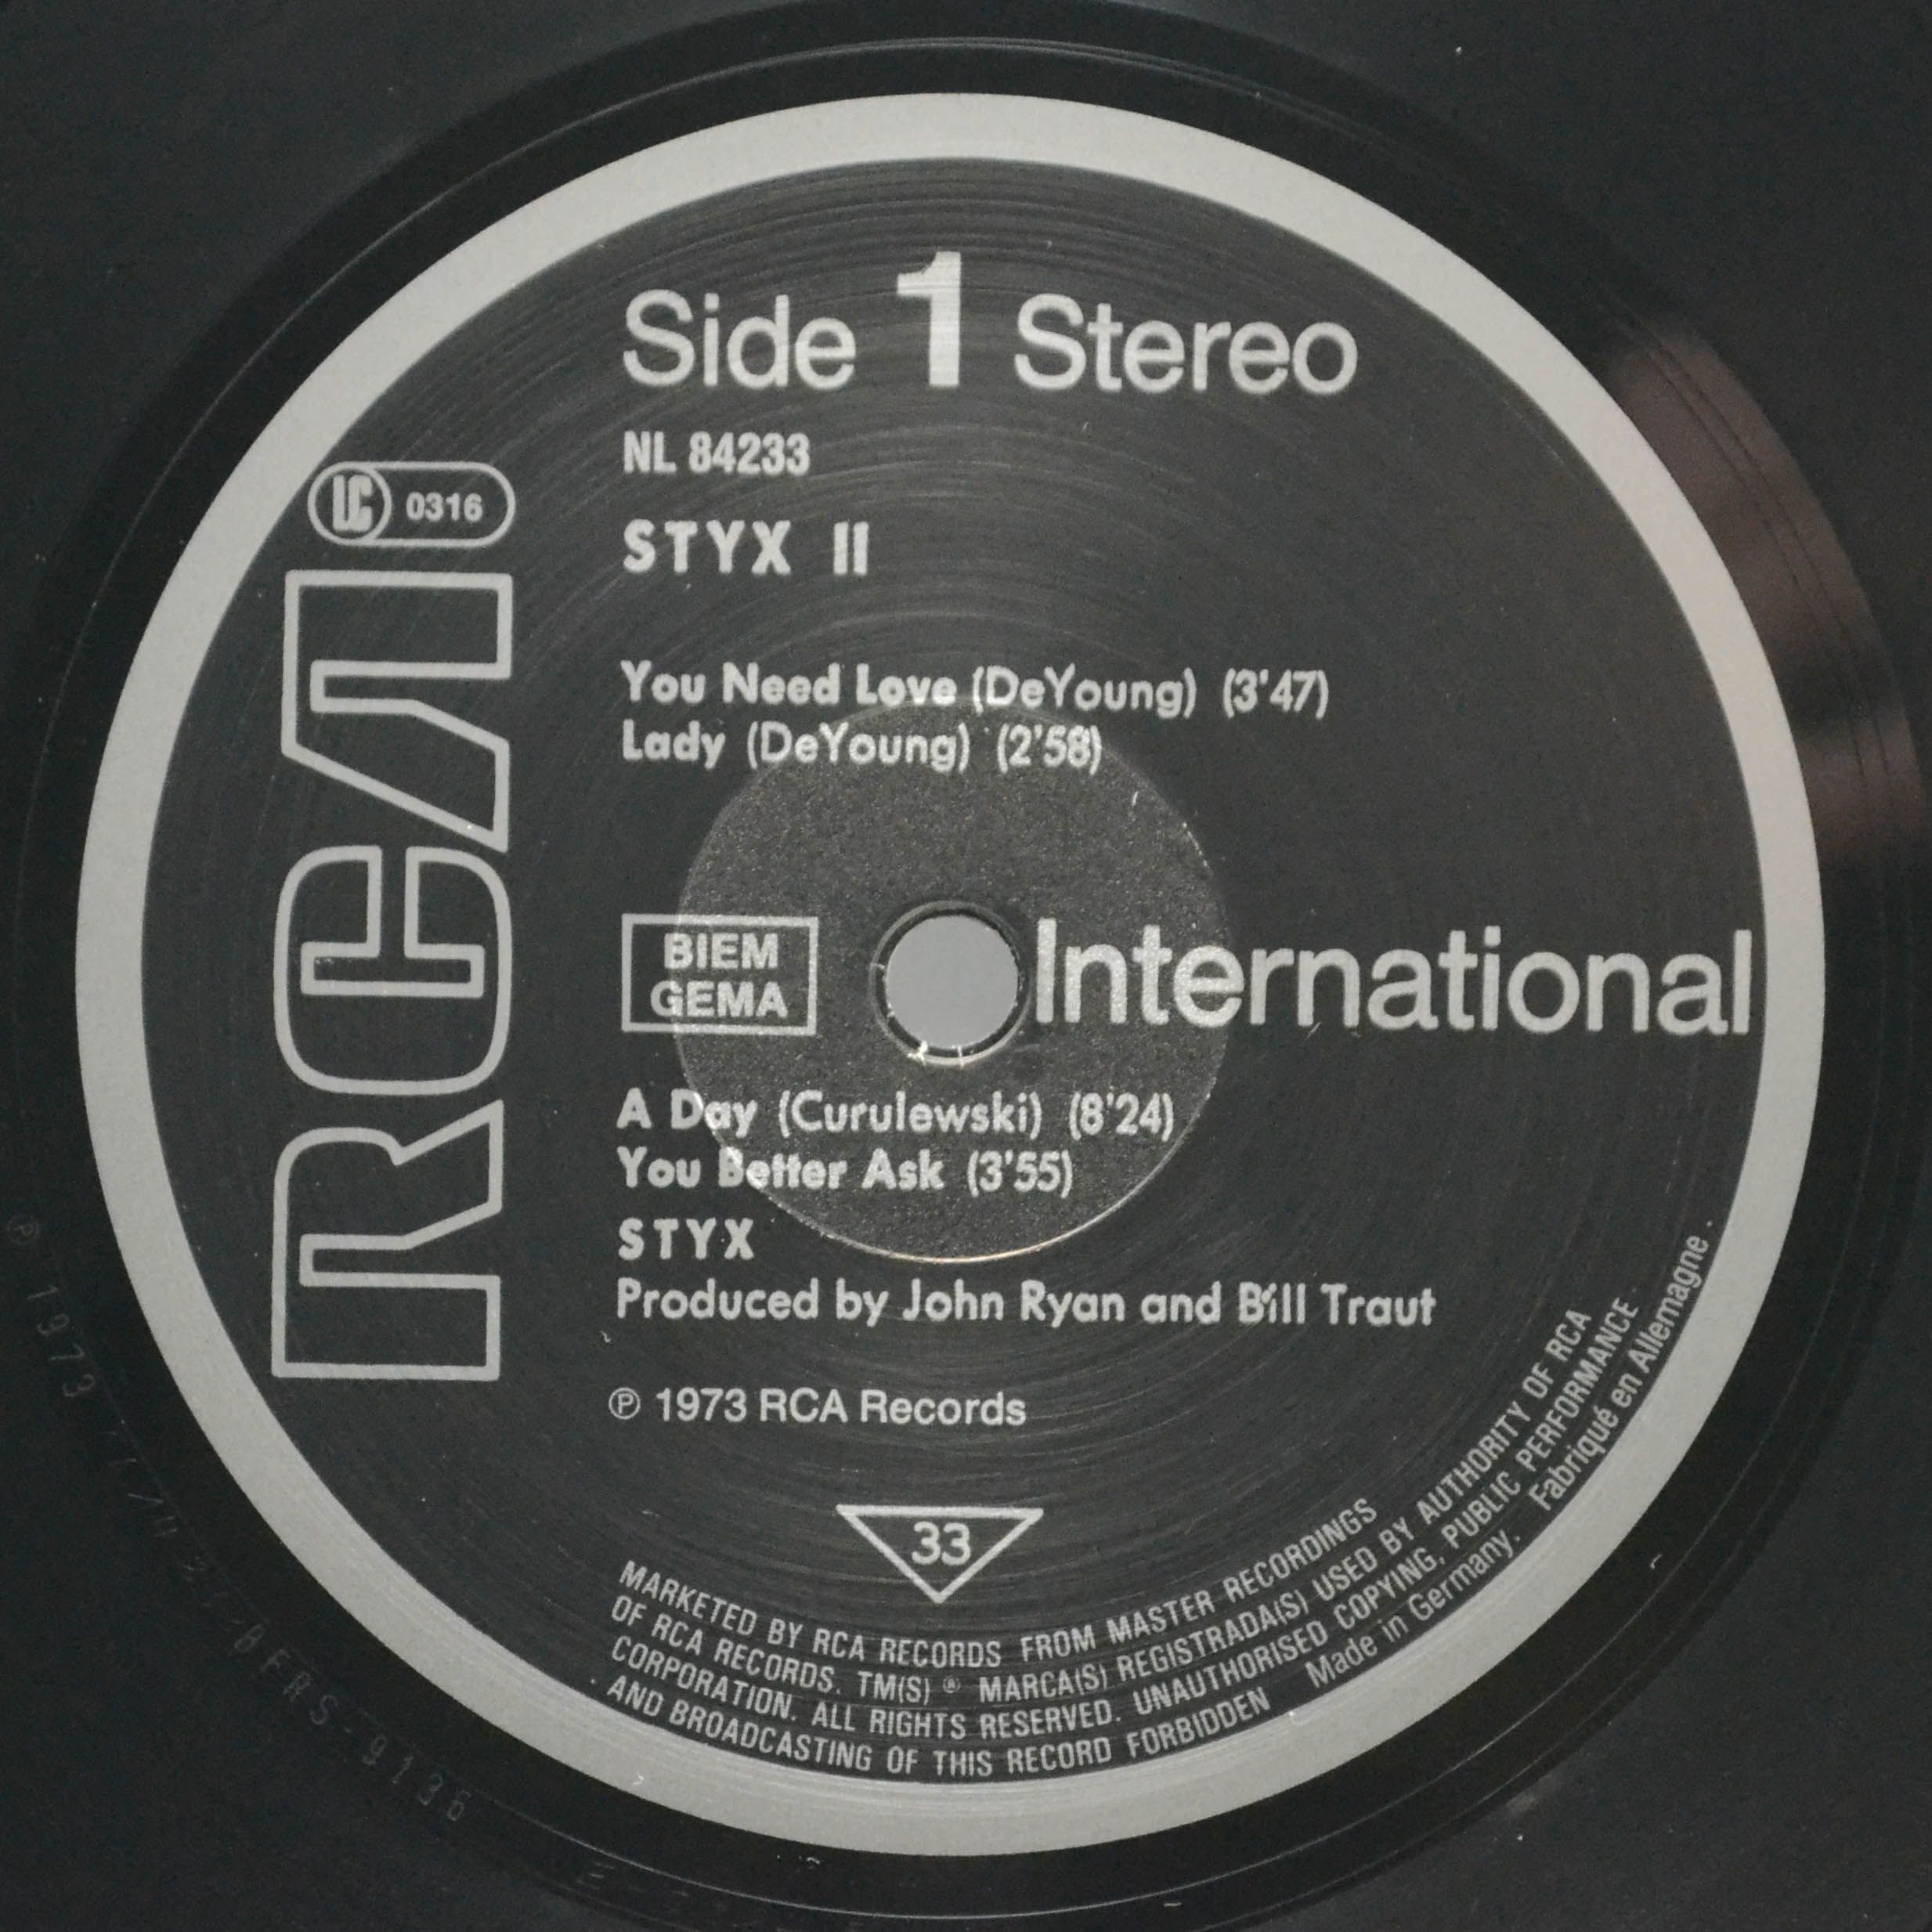 Styx — Styx II, 1973